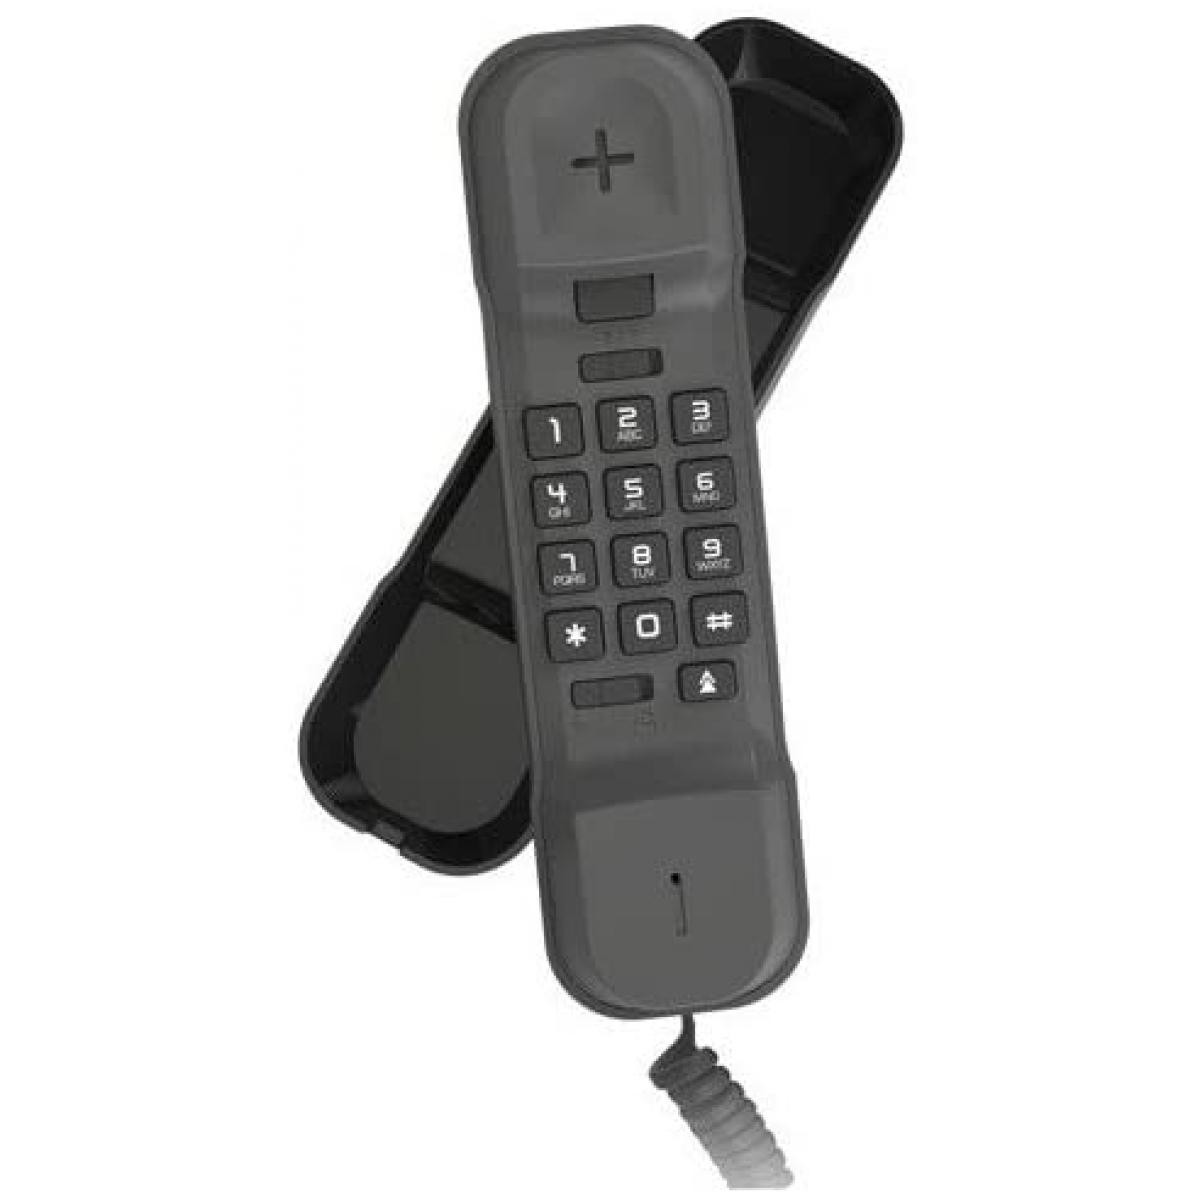 Alcatel - telephone analogique Noir - Téléphone fixe filaire